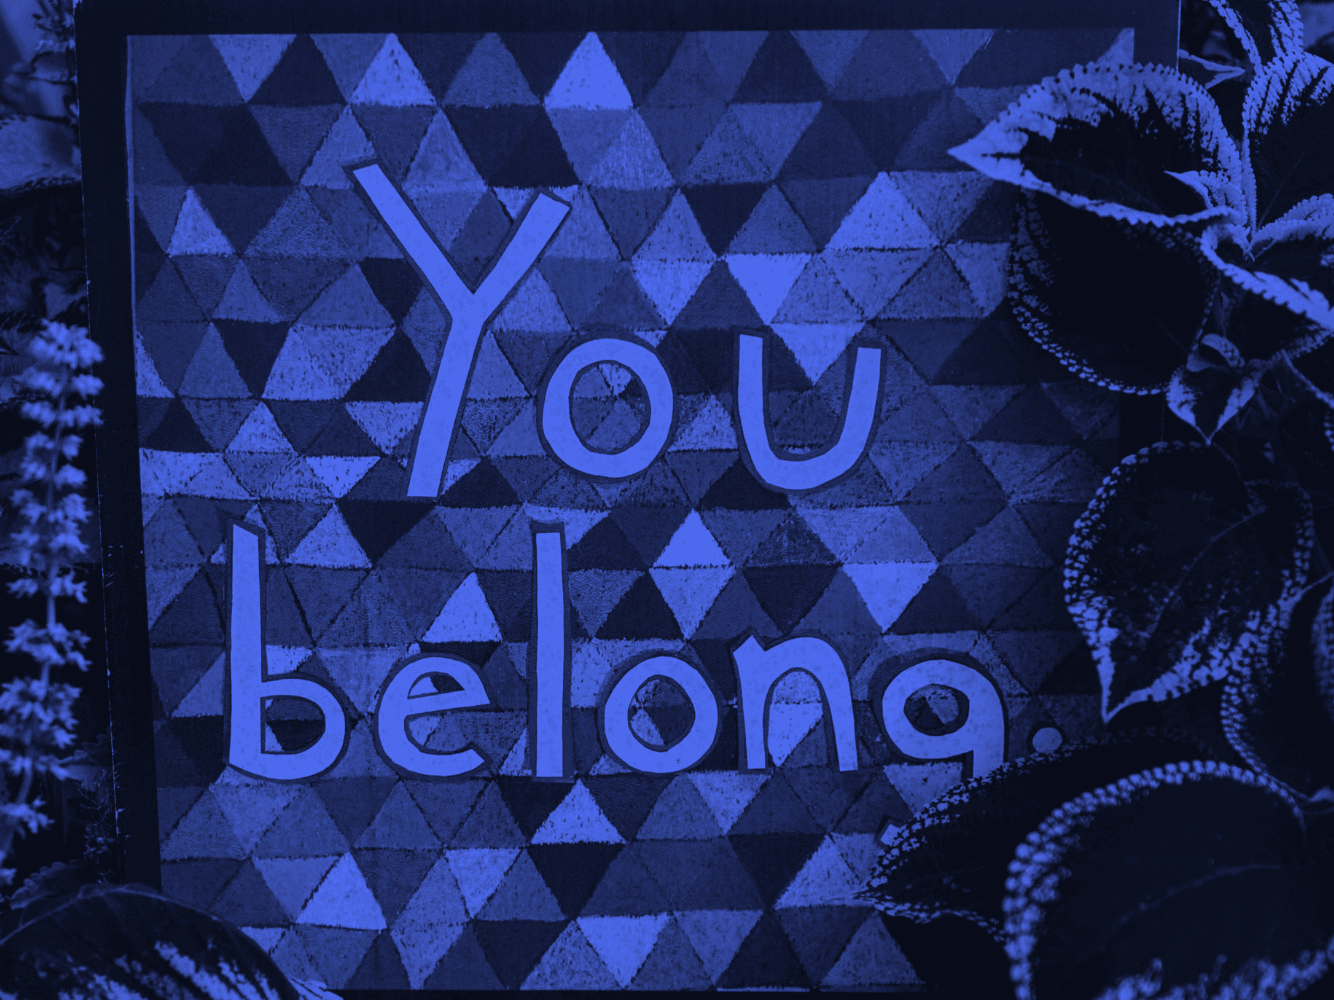 A imagem apresenta um quadro com um filtro azul e a frase "You Belong" escrita ao centro. A tradução para o português é "Você pertence".